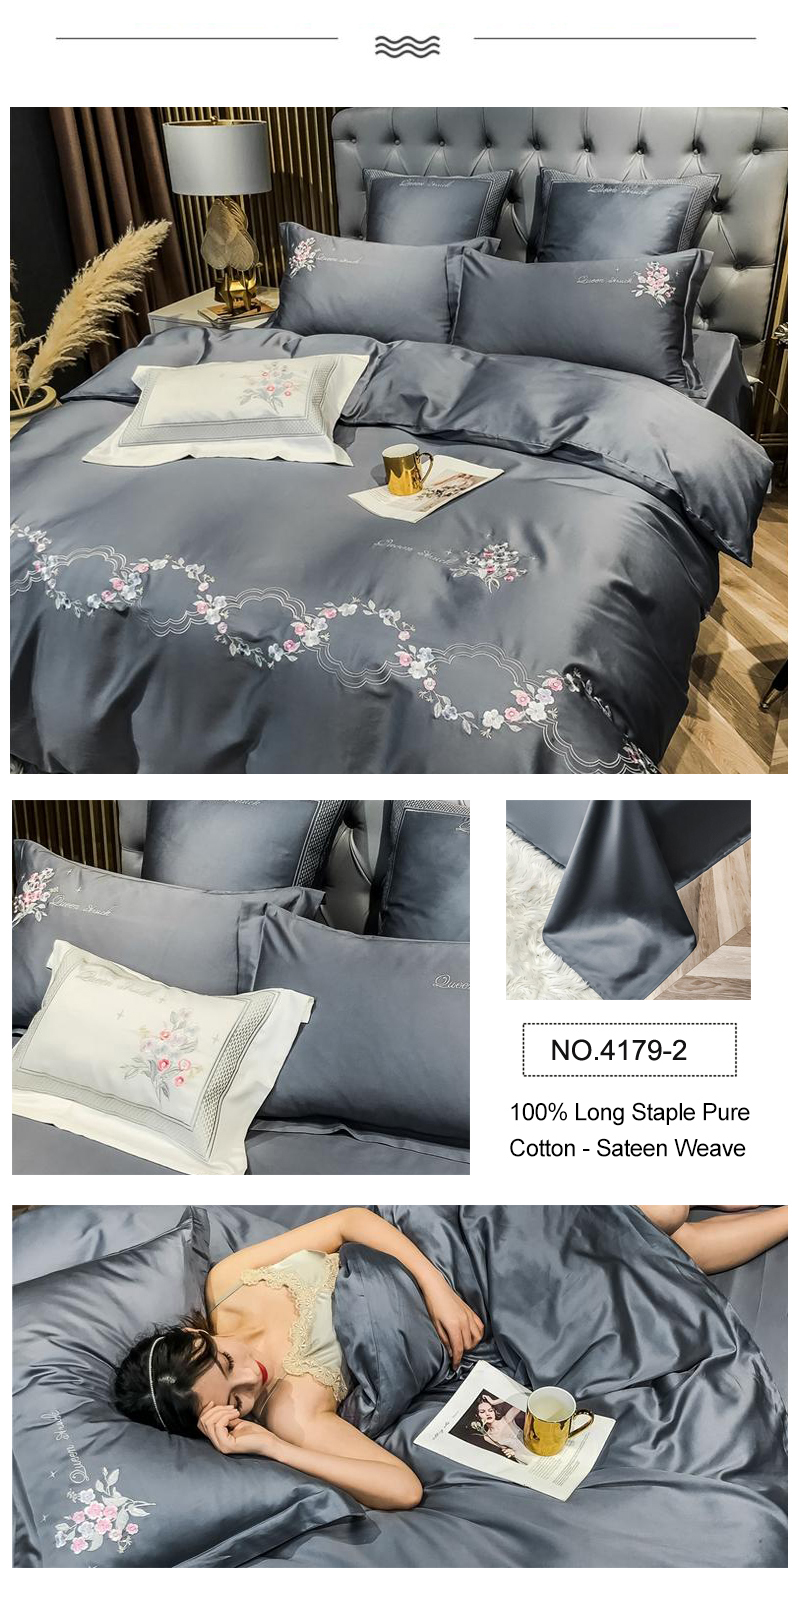 Superior Quality Bedding Softness